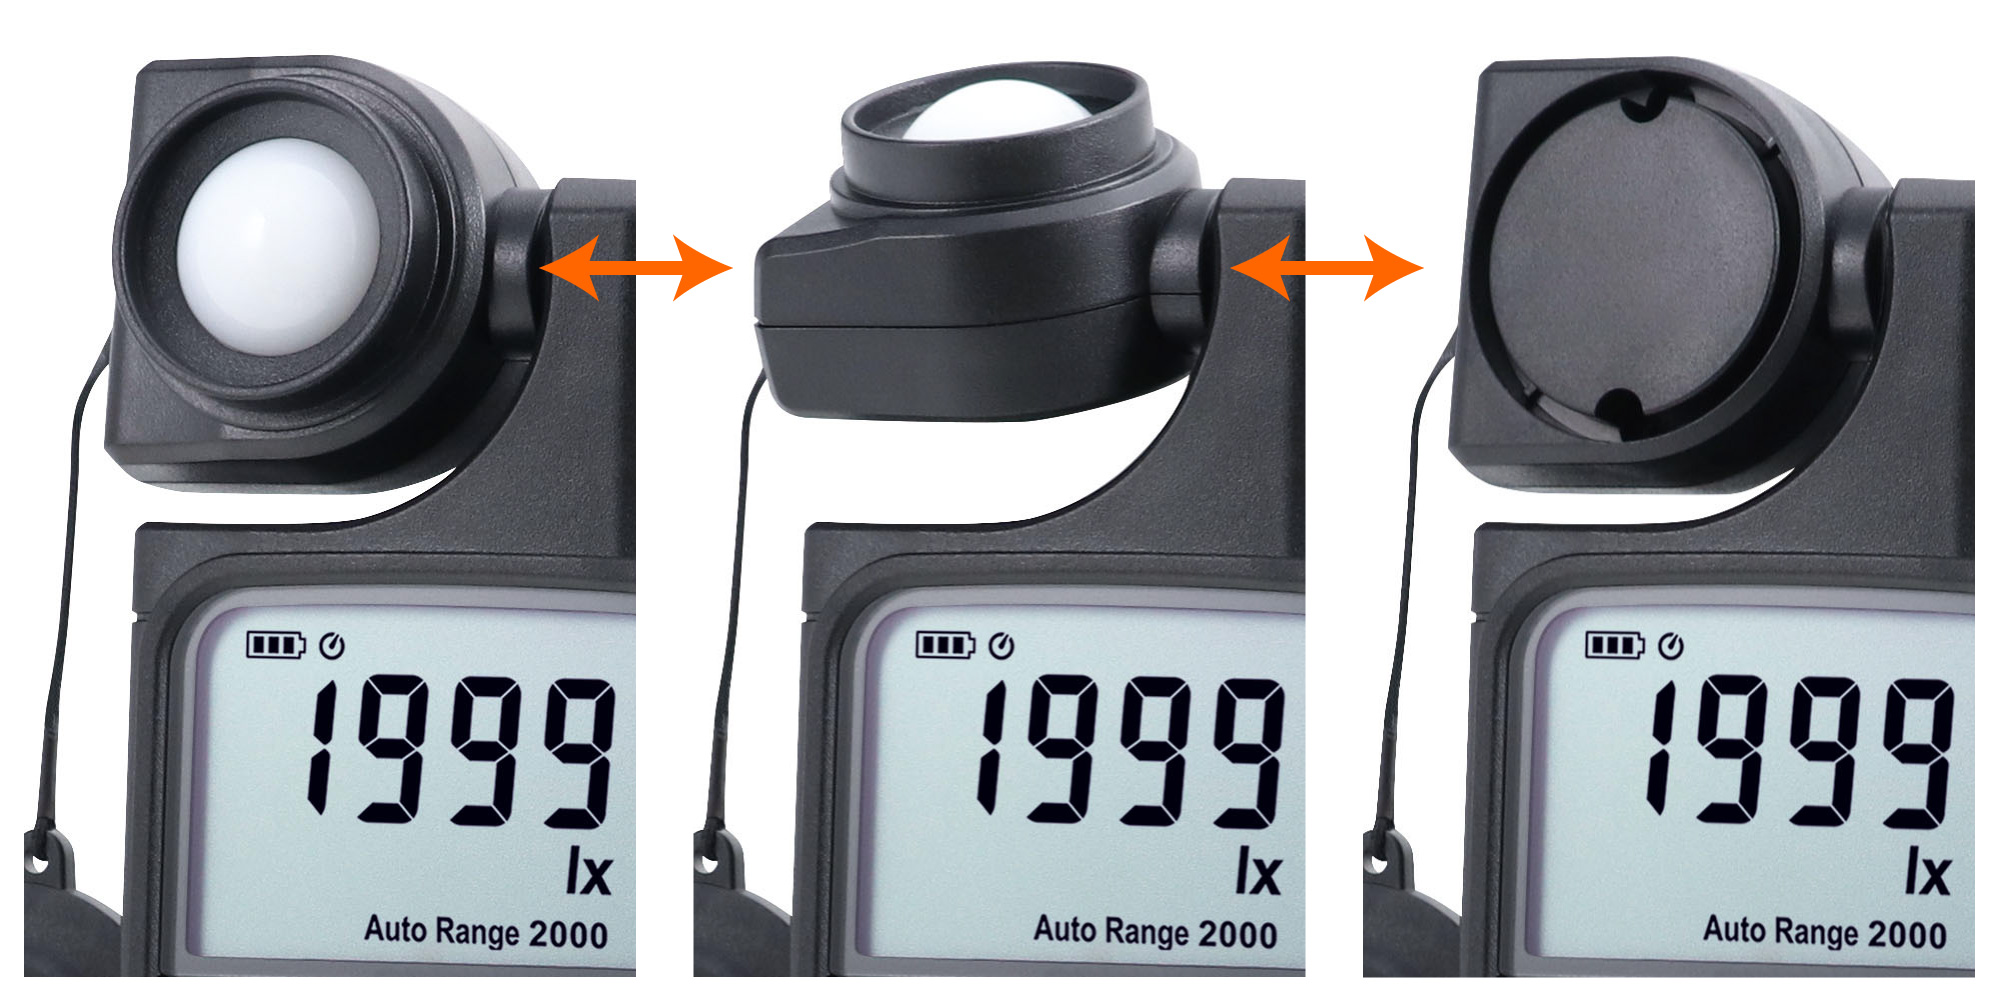 デジタル照度計 LX-2500 | 自然環境測定器 - 製品情報 - 計測器のカスタム